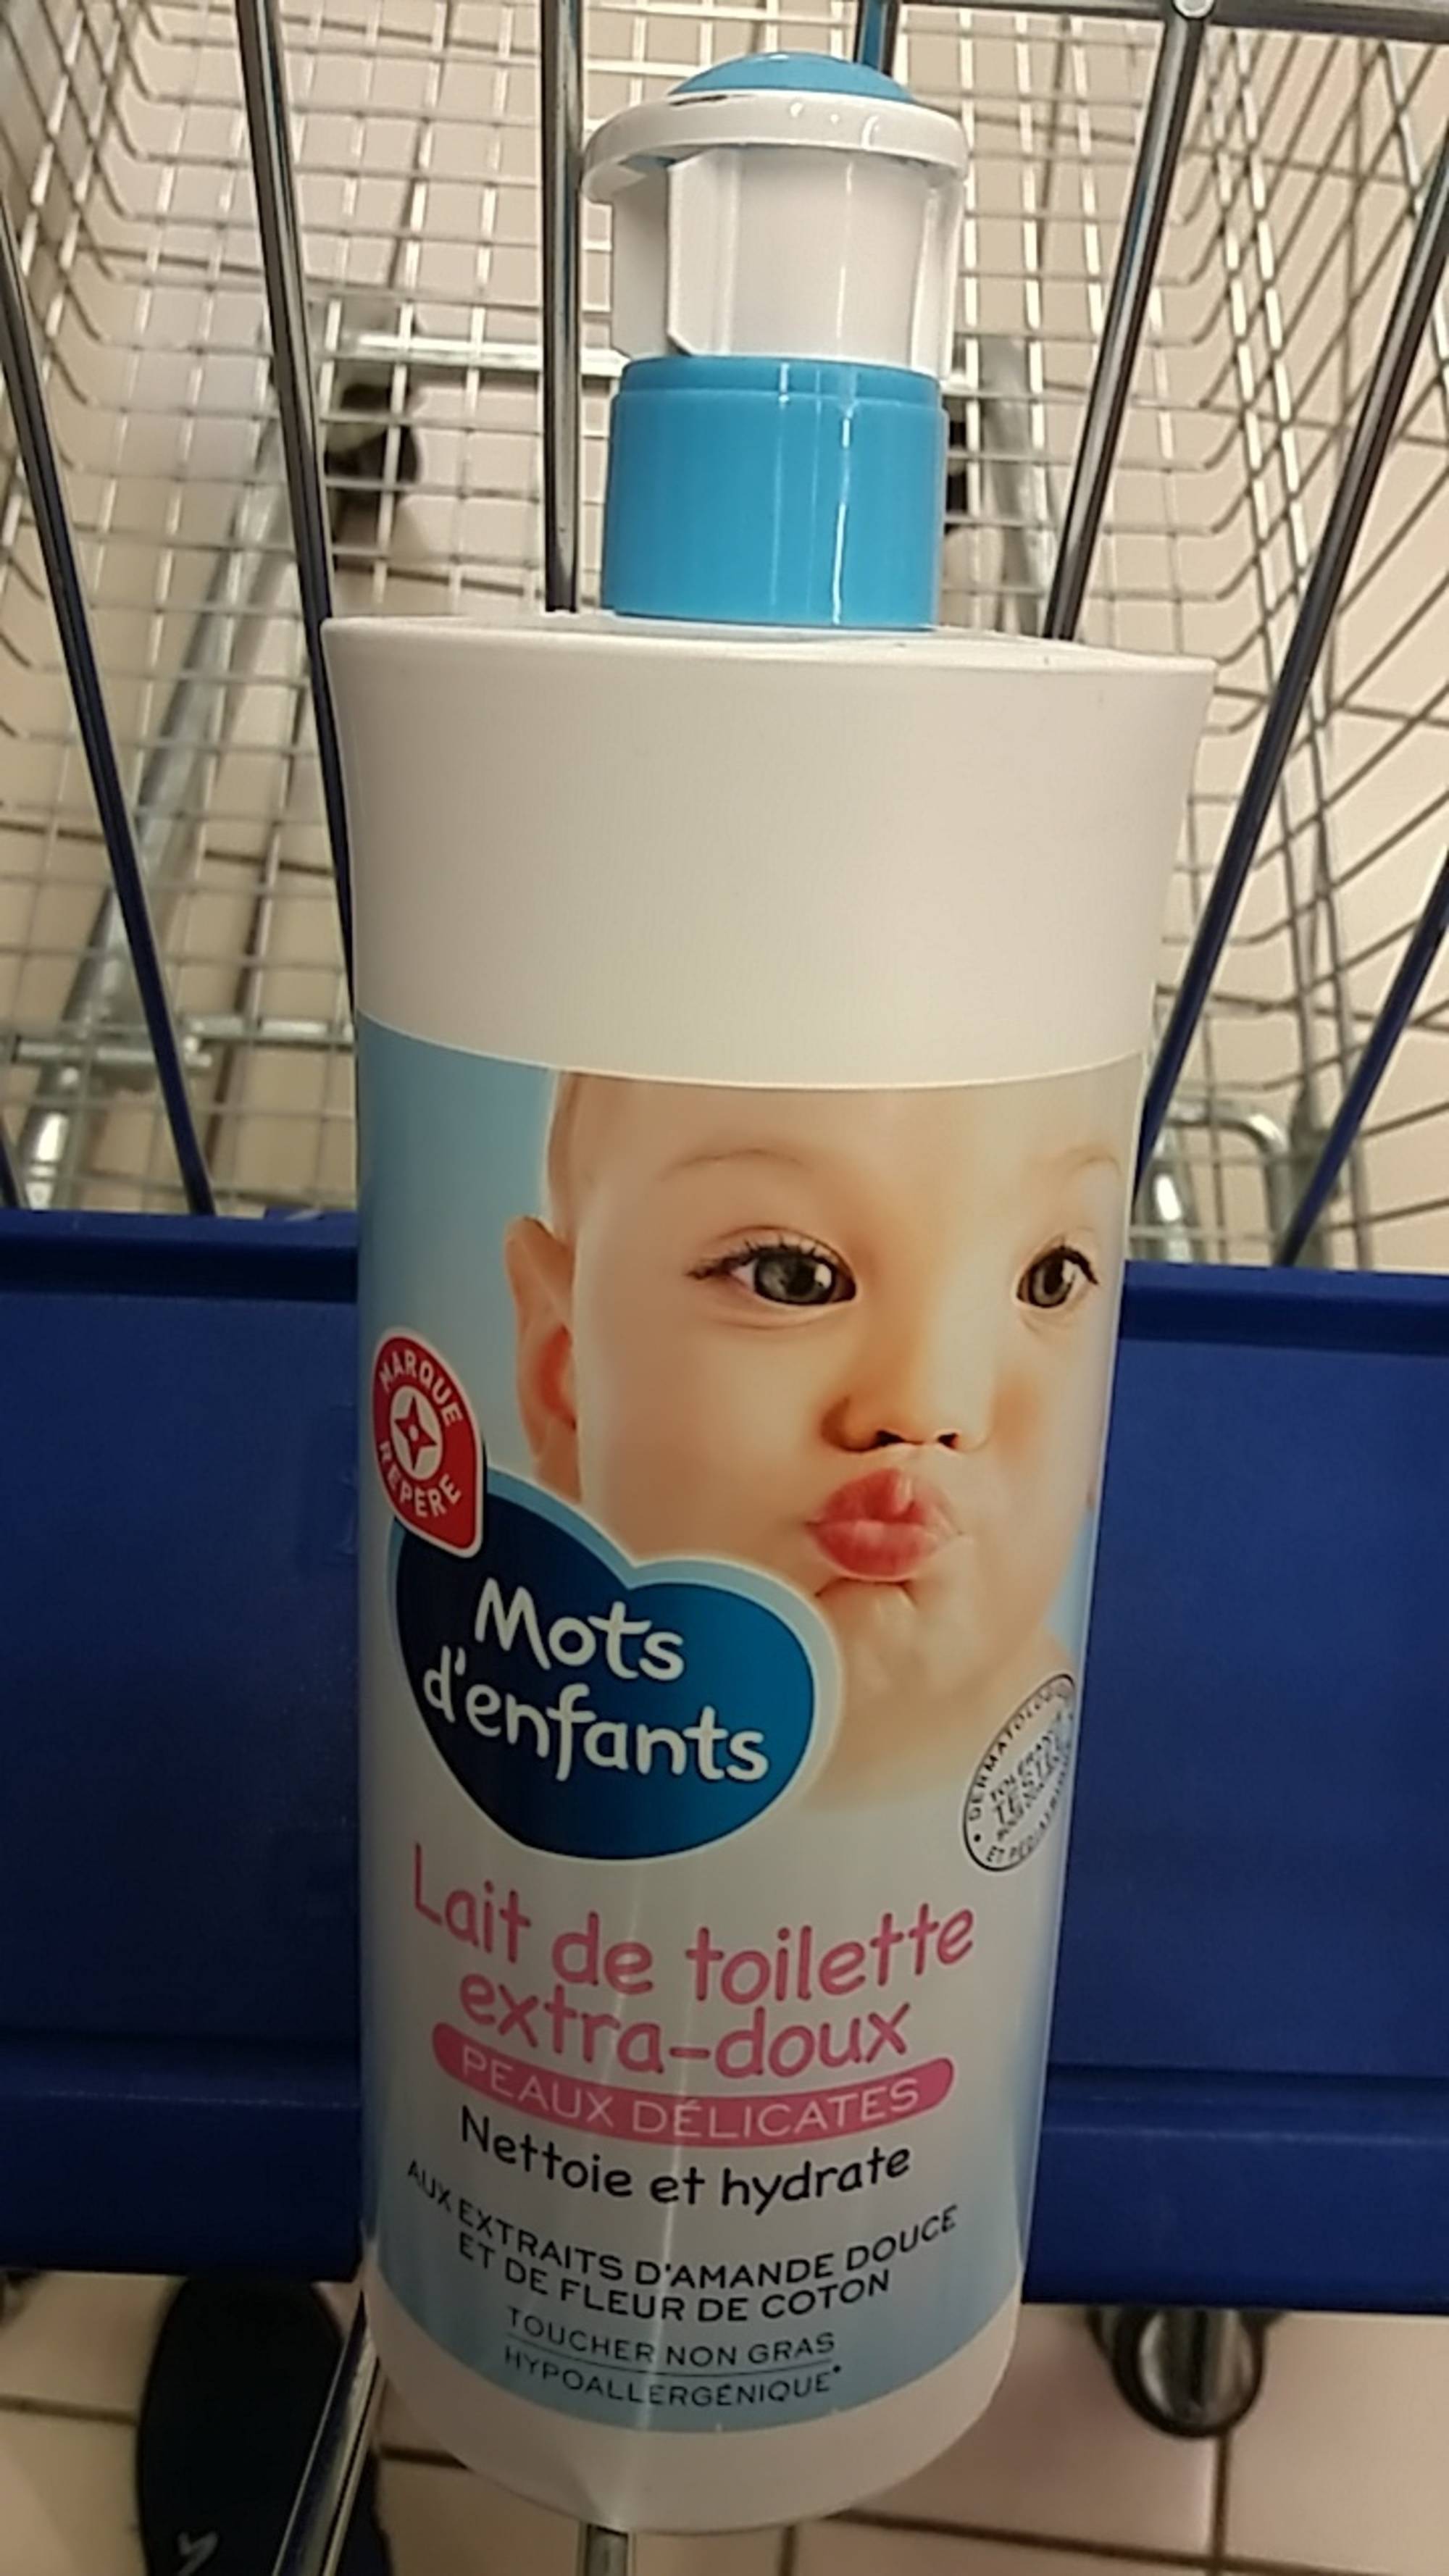 Lait de toilette bébé extra-doux- Mots d'enfants - Leclerc Marque Repère